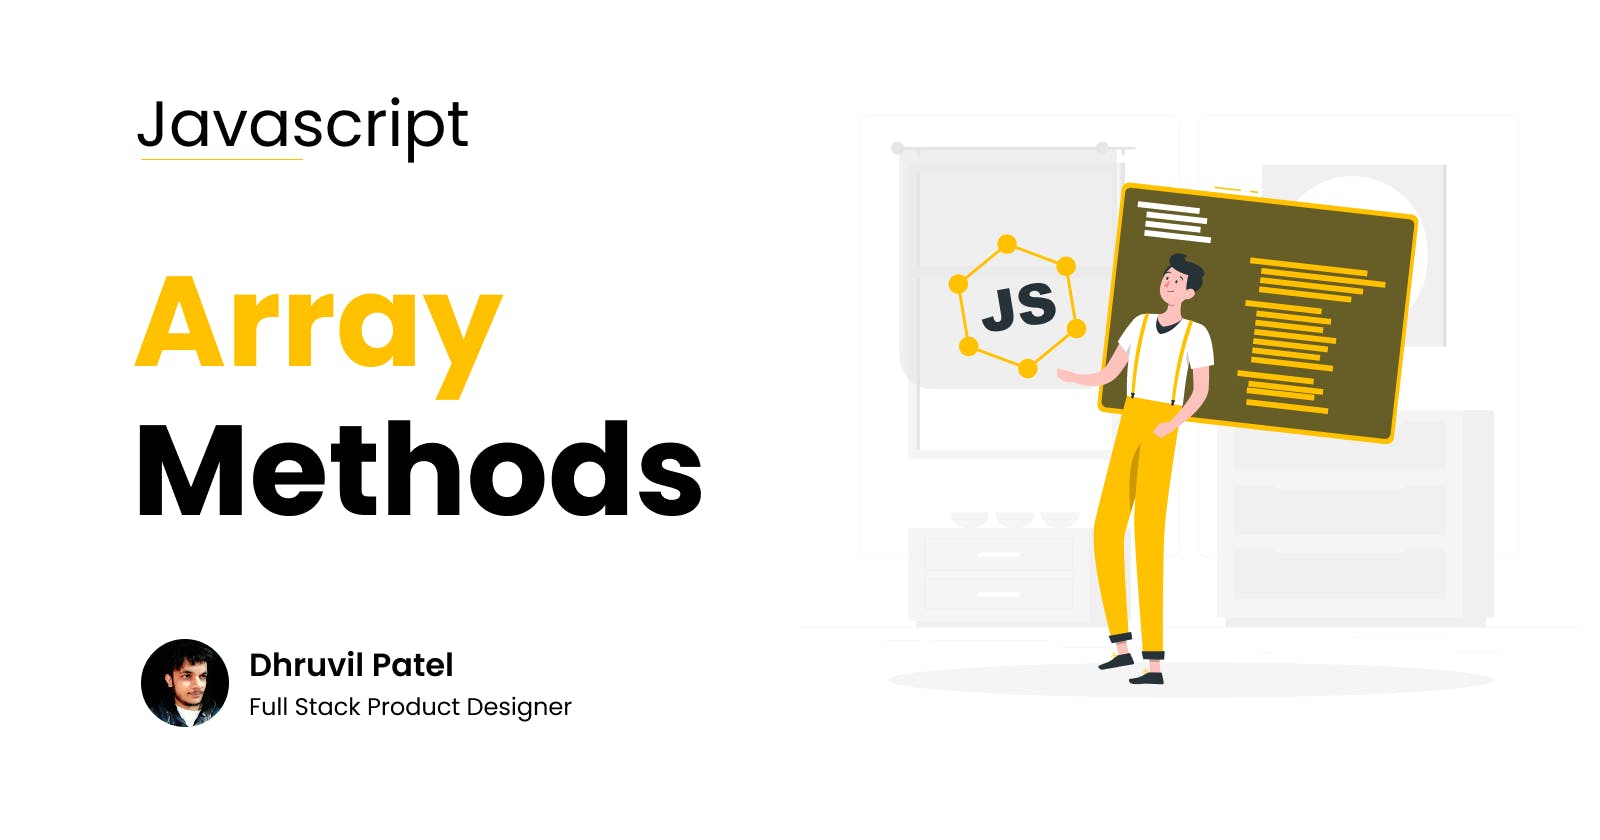 Let's explore JavaScript Array Methods